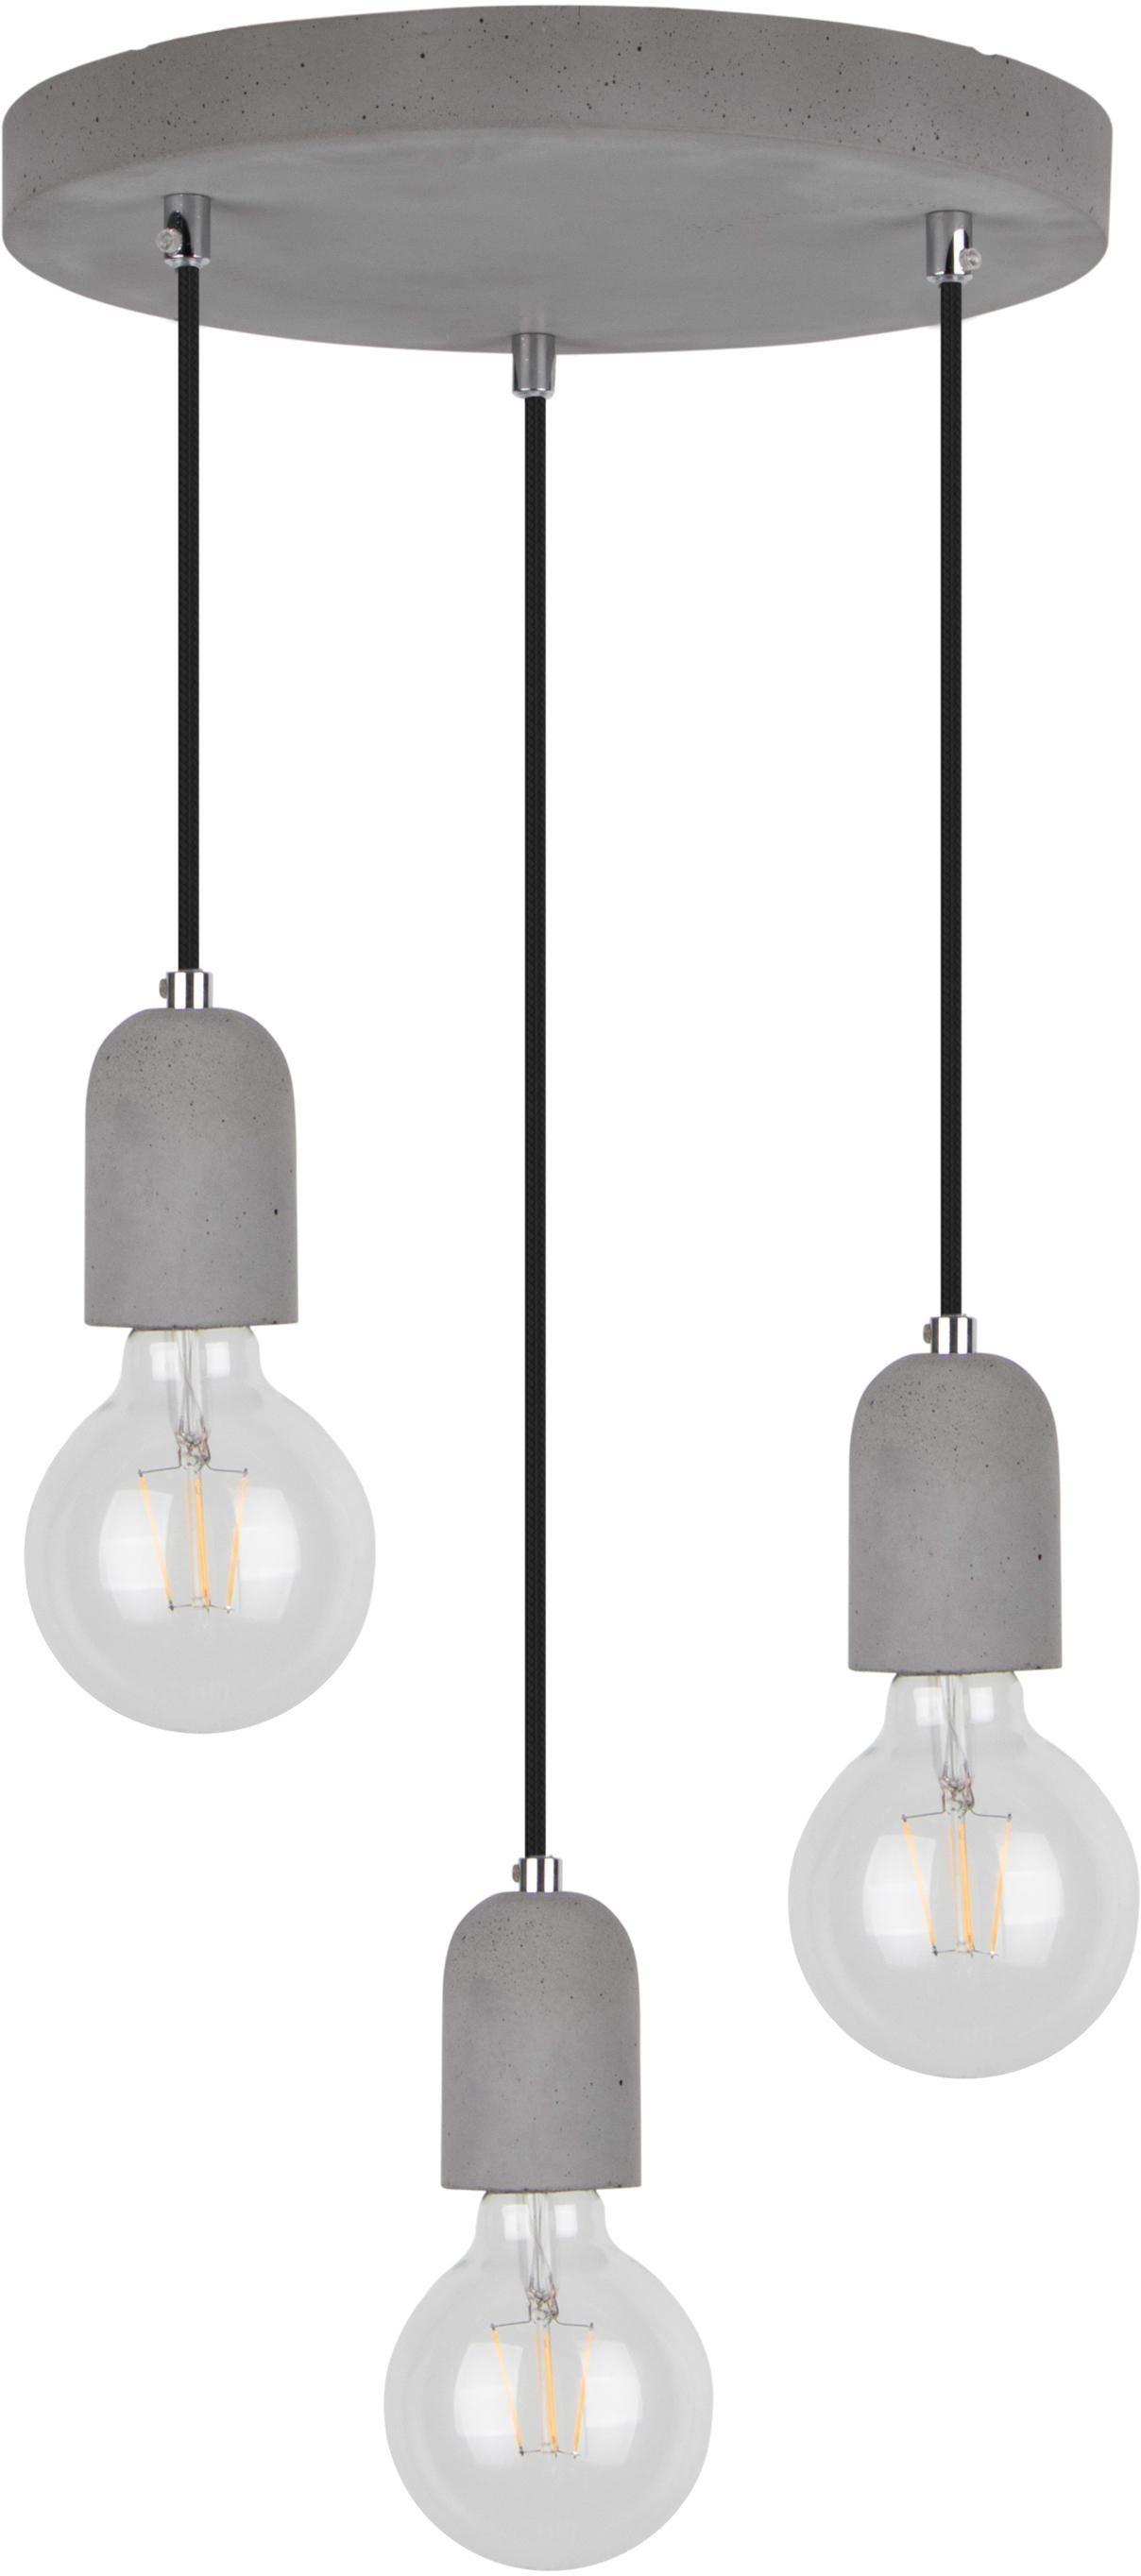 spot light hanglamp amory hanglamp, echt beton - met de hand gemaakt, textielen kabel, natuurproduct grijs